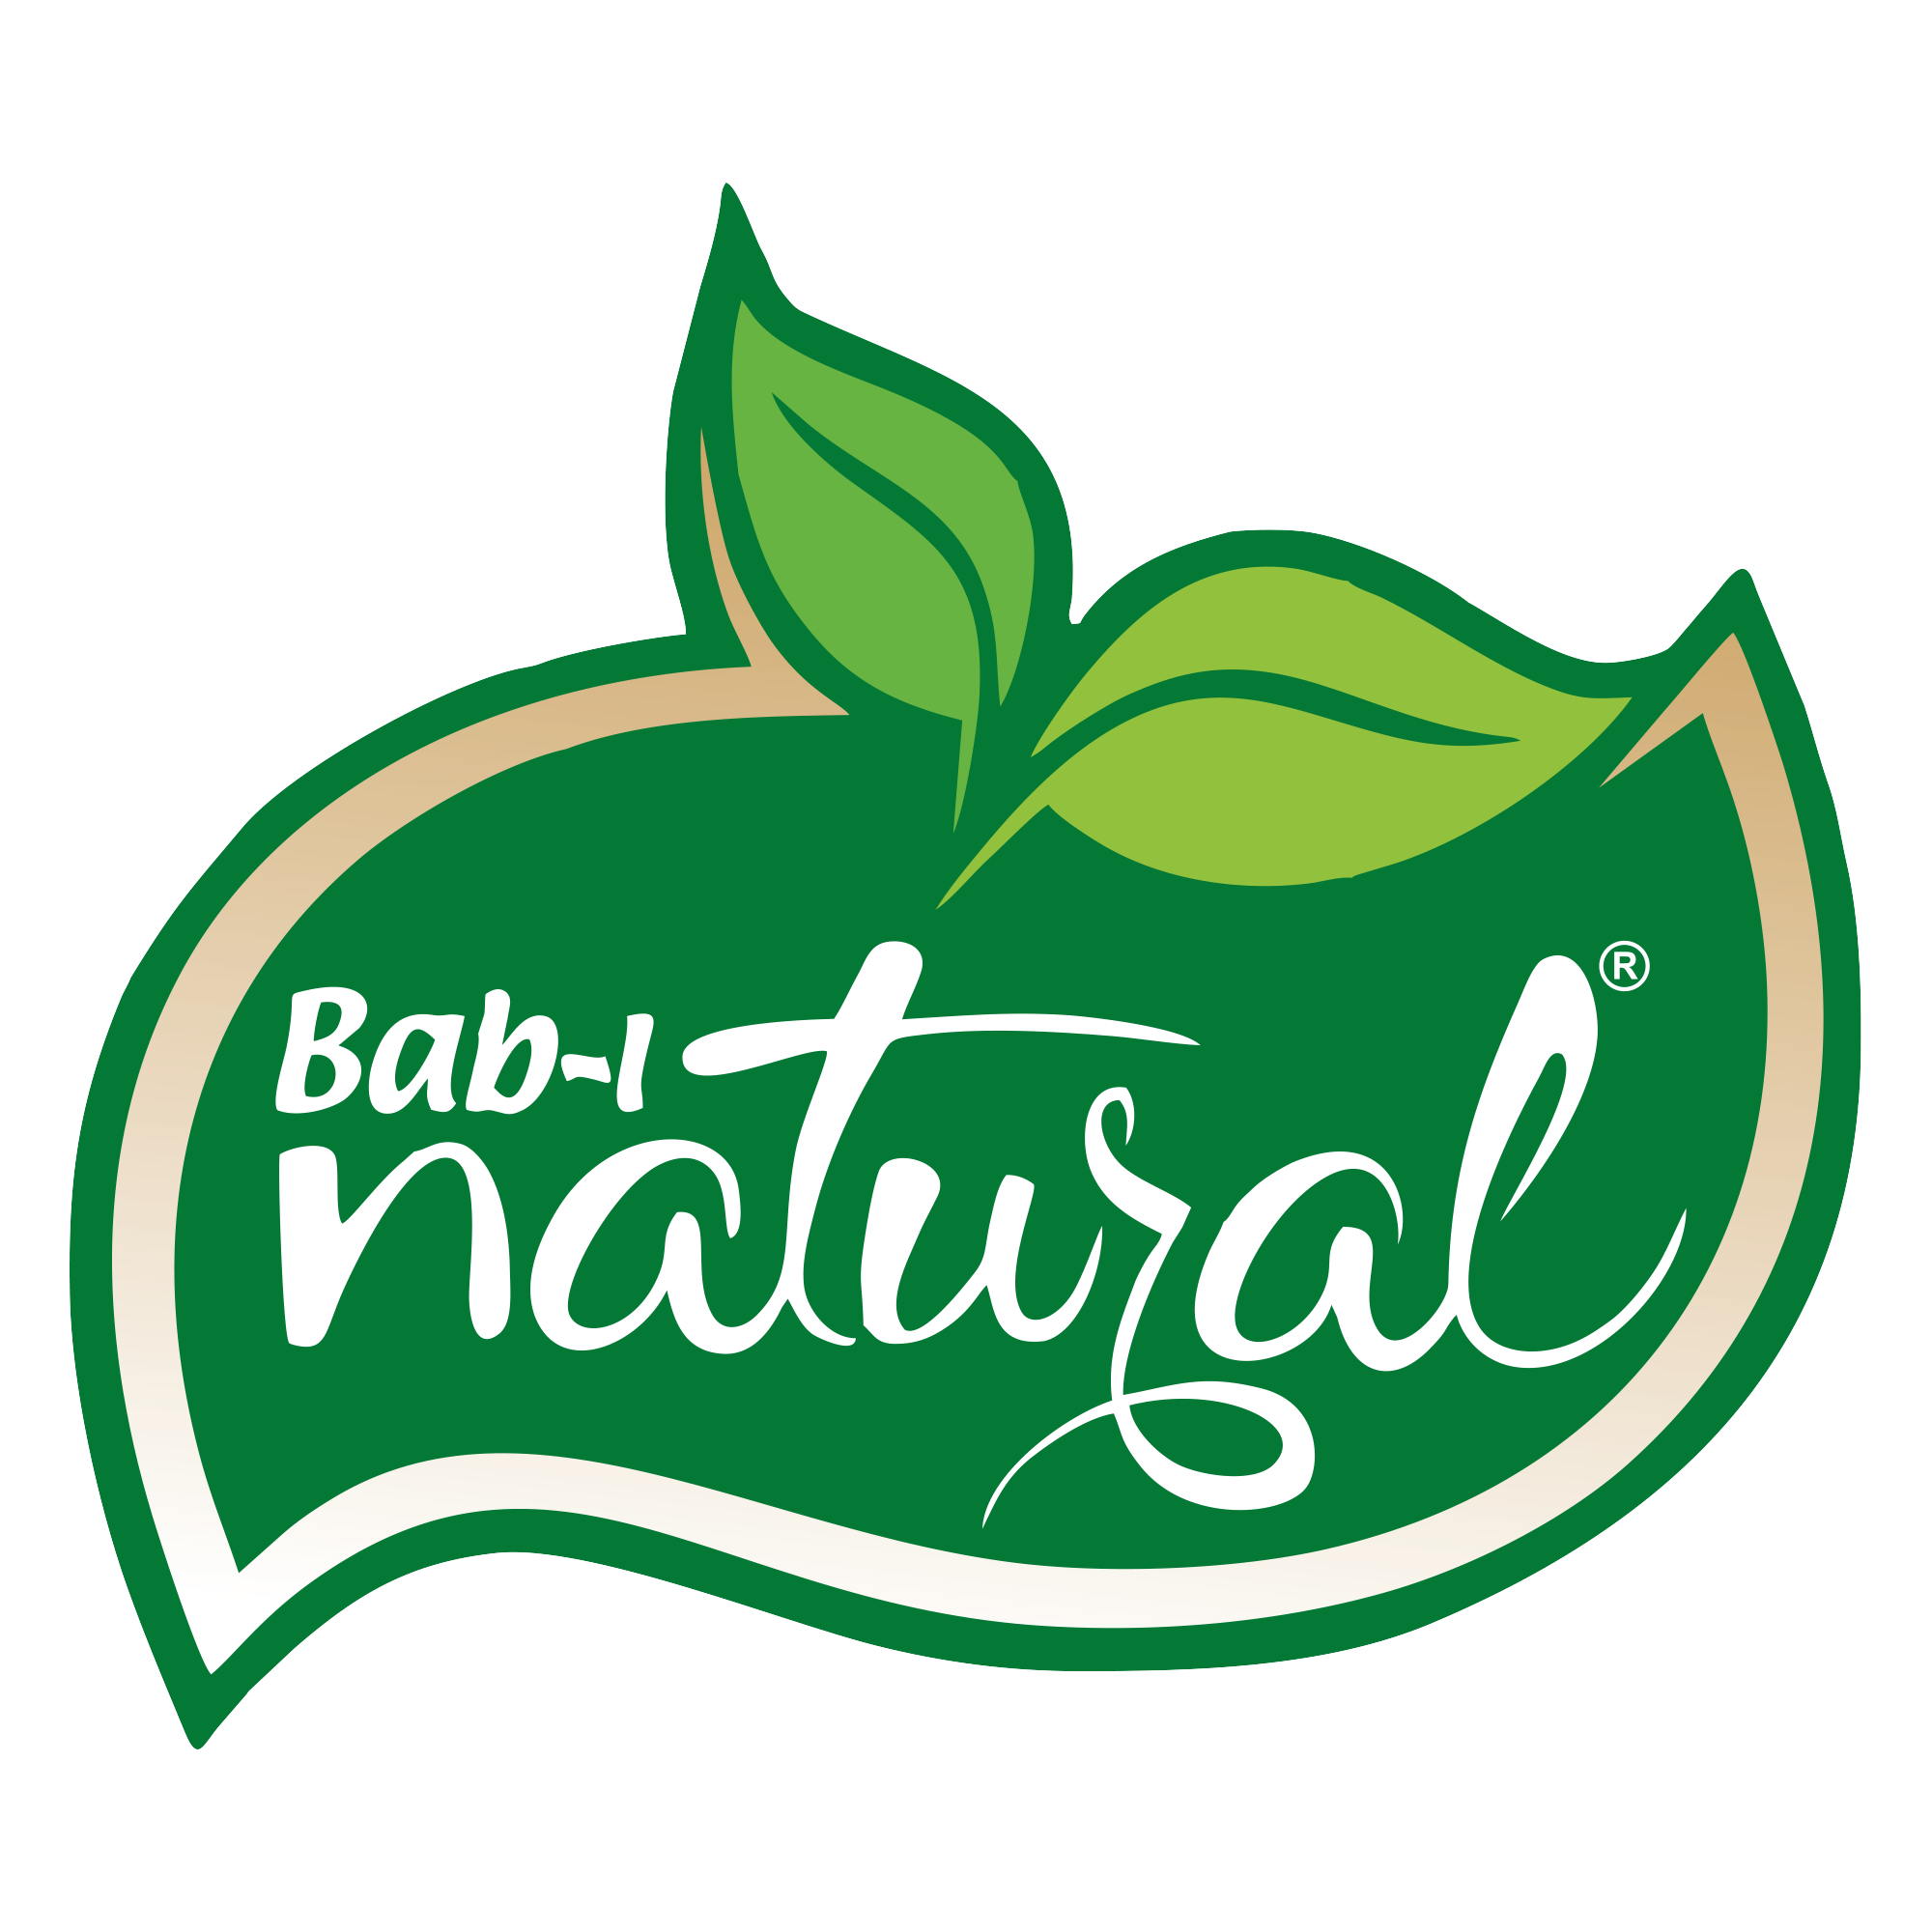 BAB-I NATURAL